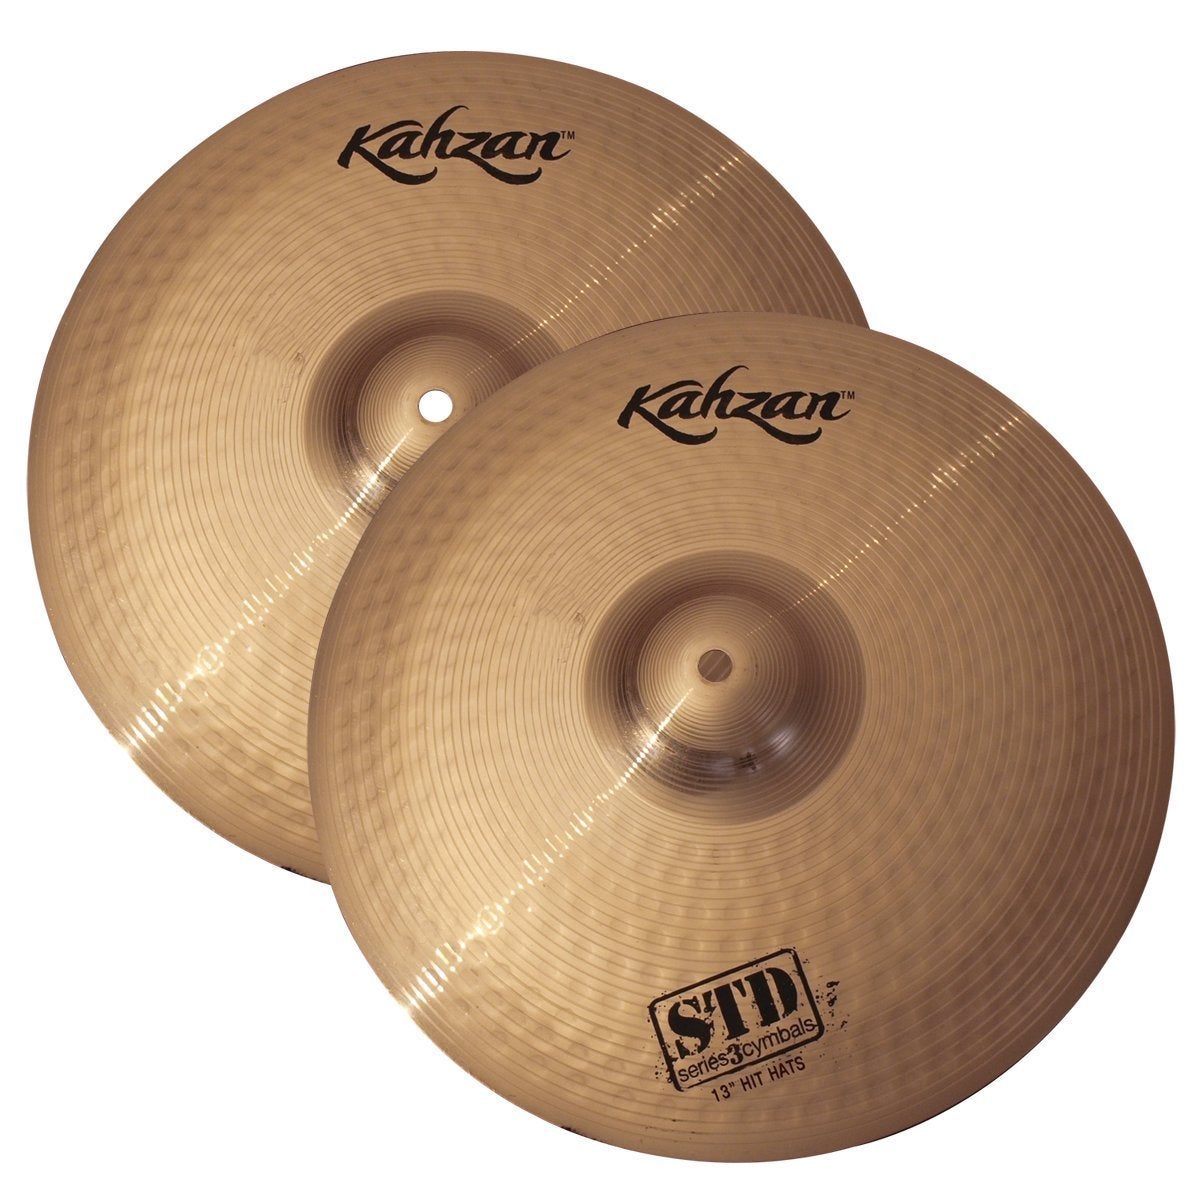 Kahzan 'STD-3 Series' Hi-Hat Cymbals (13")